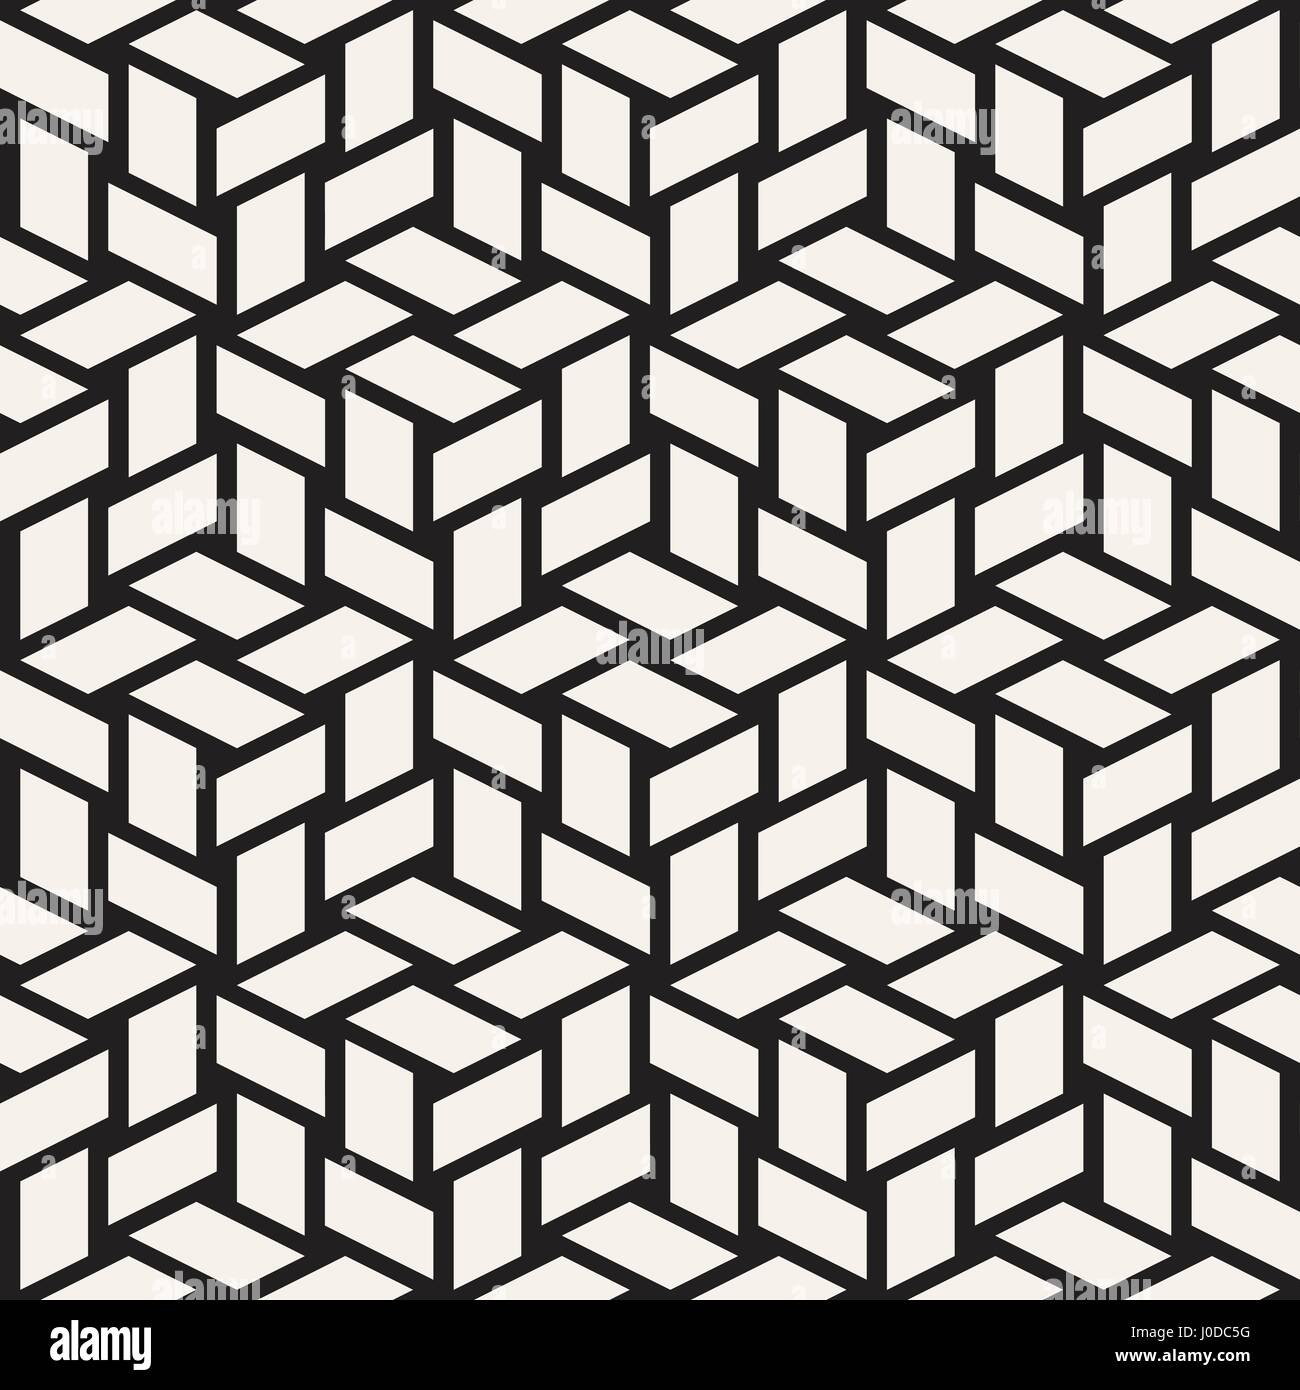 Grille de cubes carrelage élégant sans fin de texture. La conception d'arrière-plan géométrique abstraite. Seamless Vector motif en noir et blanc. Illustration de Vecteur